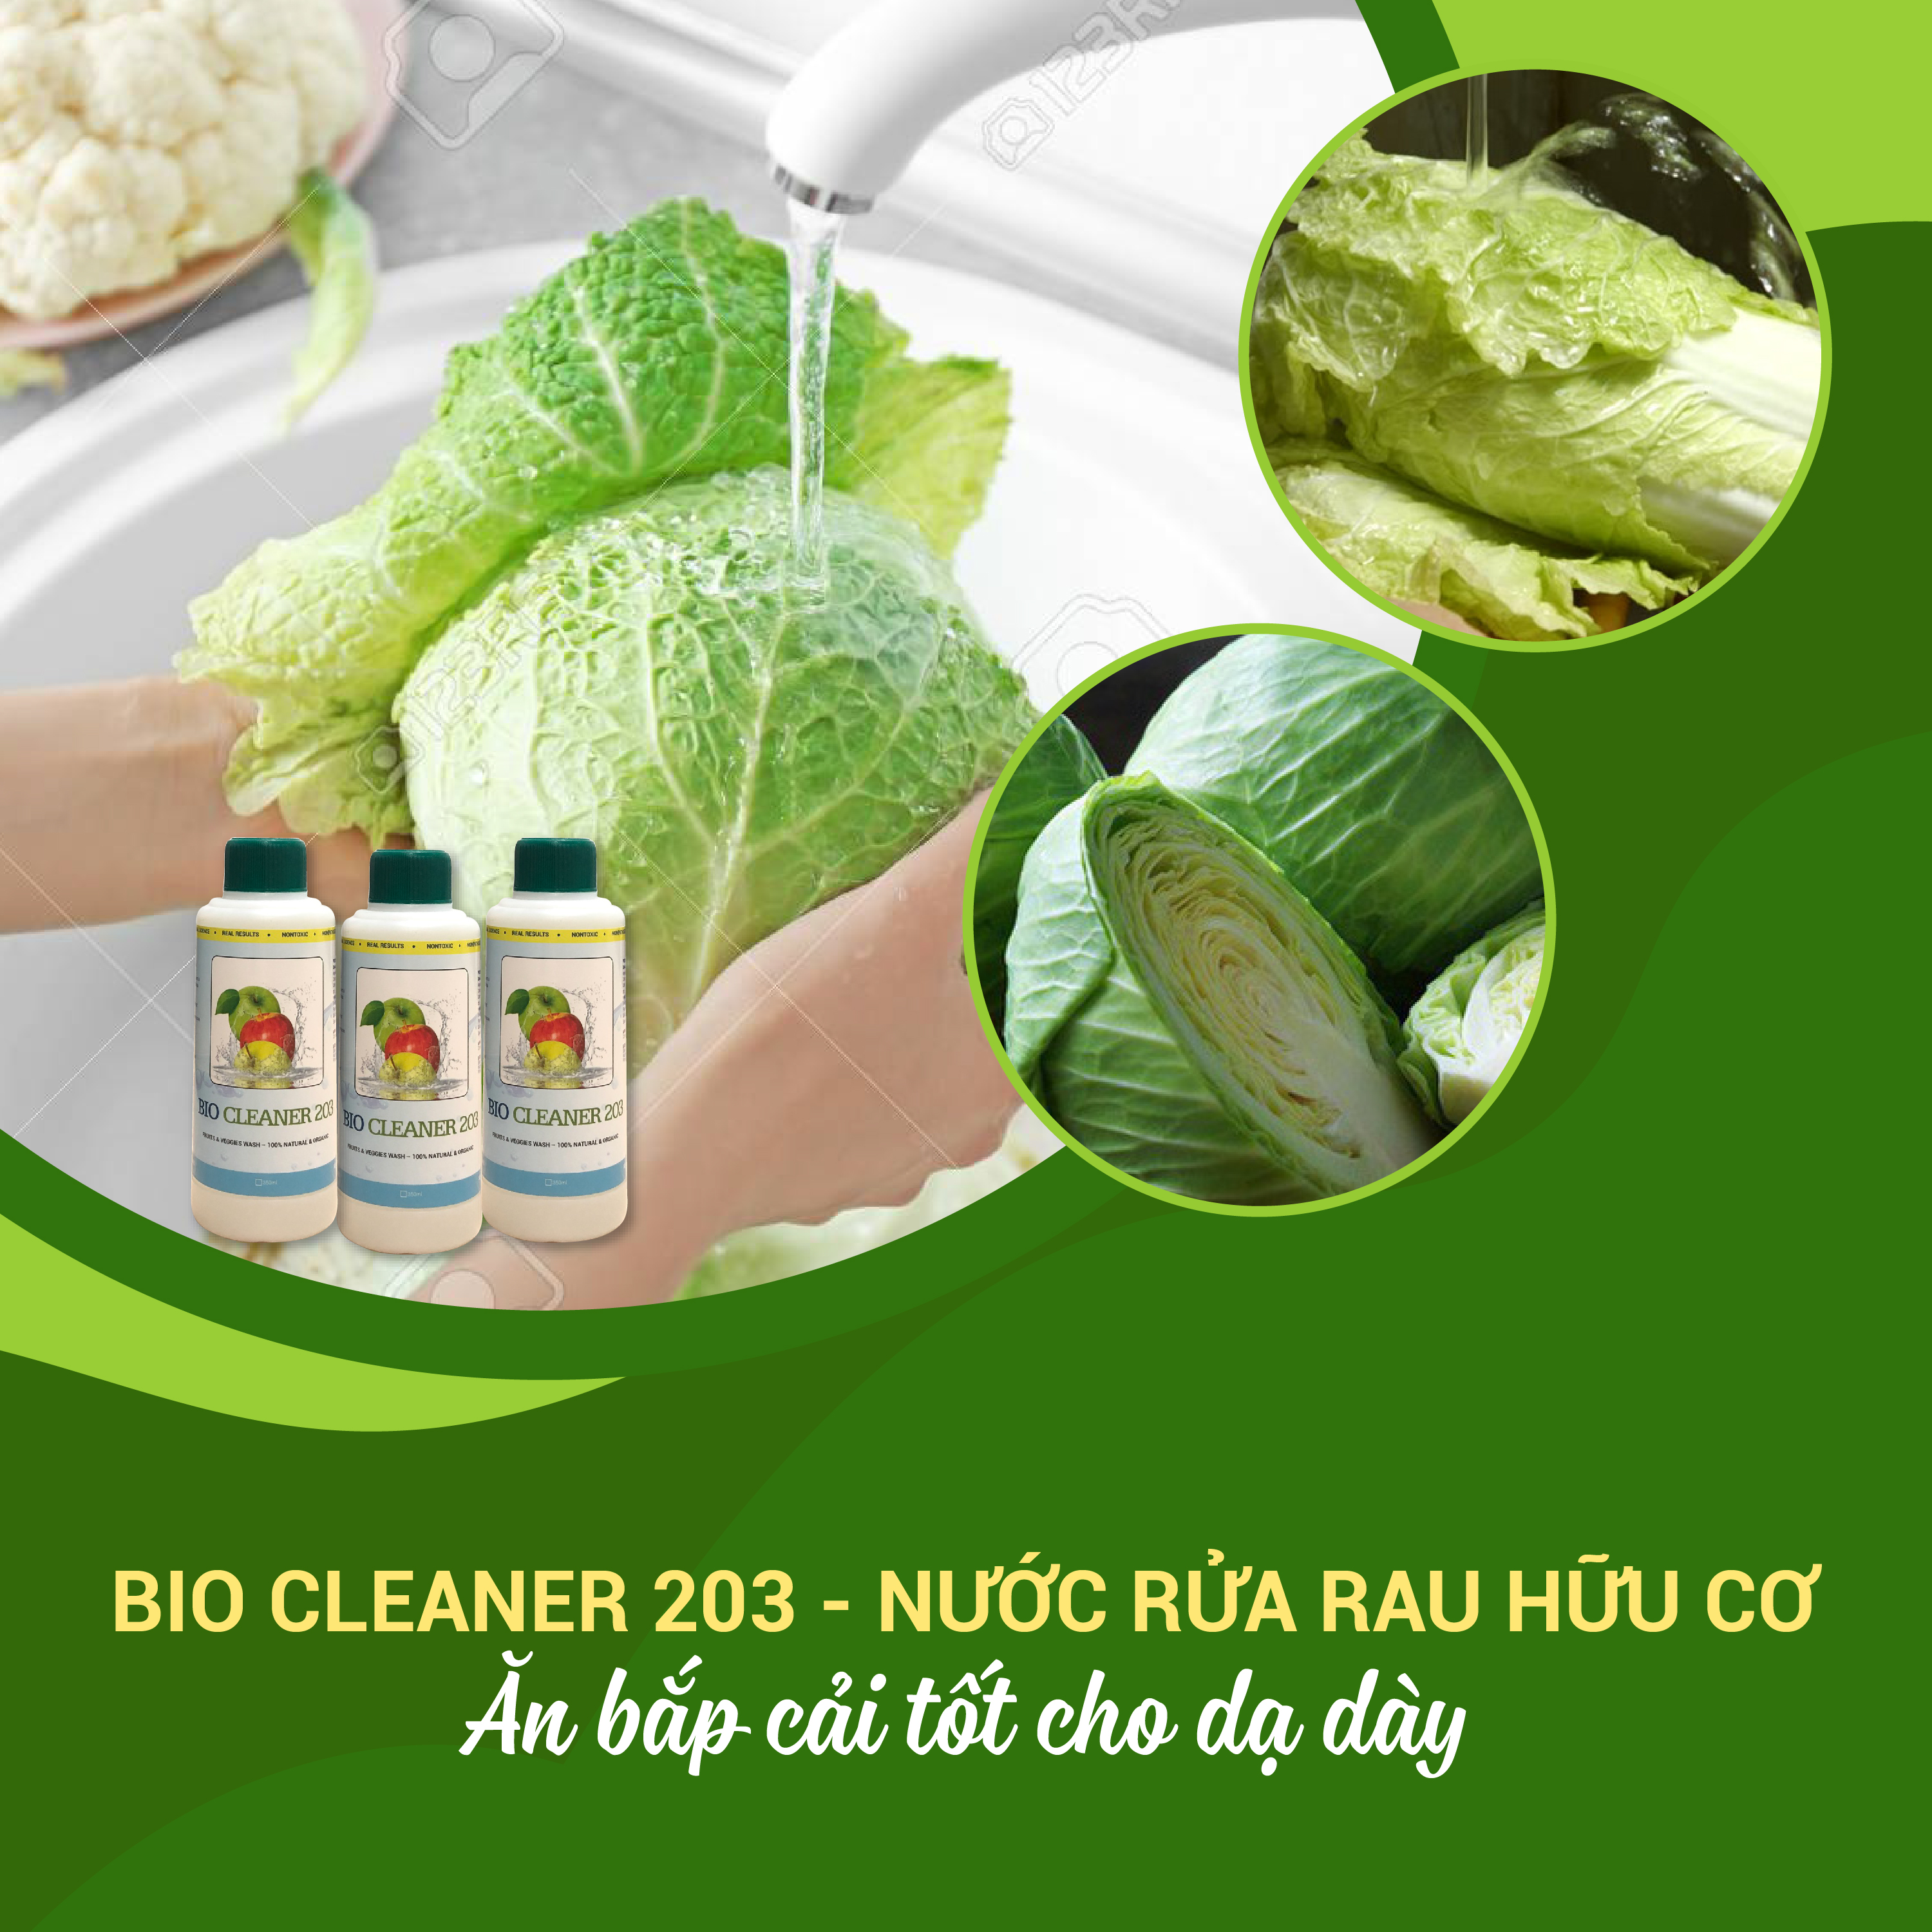 Nước rửa rau quả, trái cây sinh học hữu cơ Bio Cleaner 203 (350 ml)